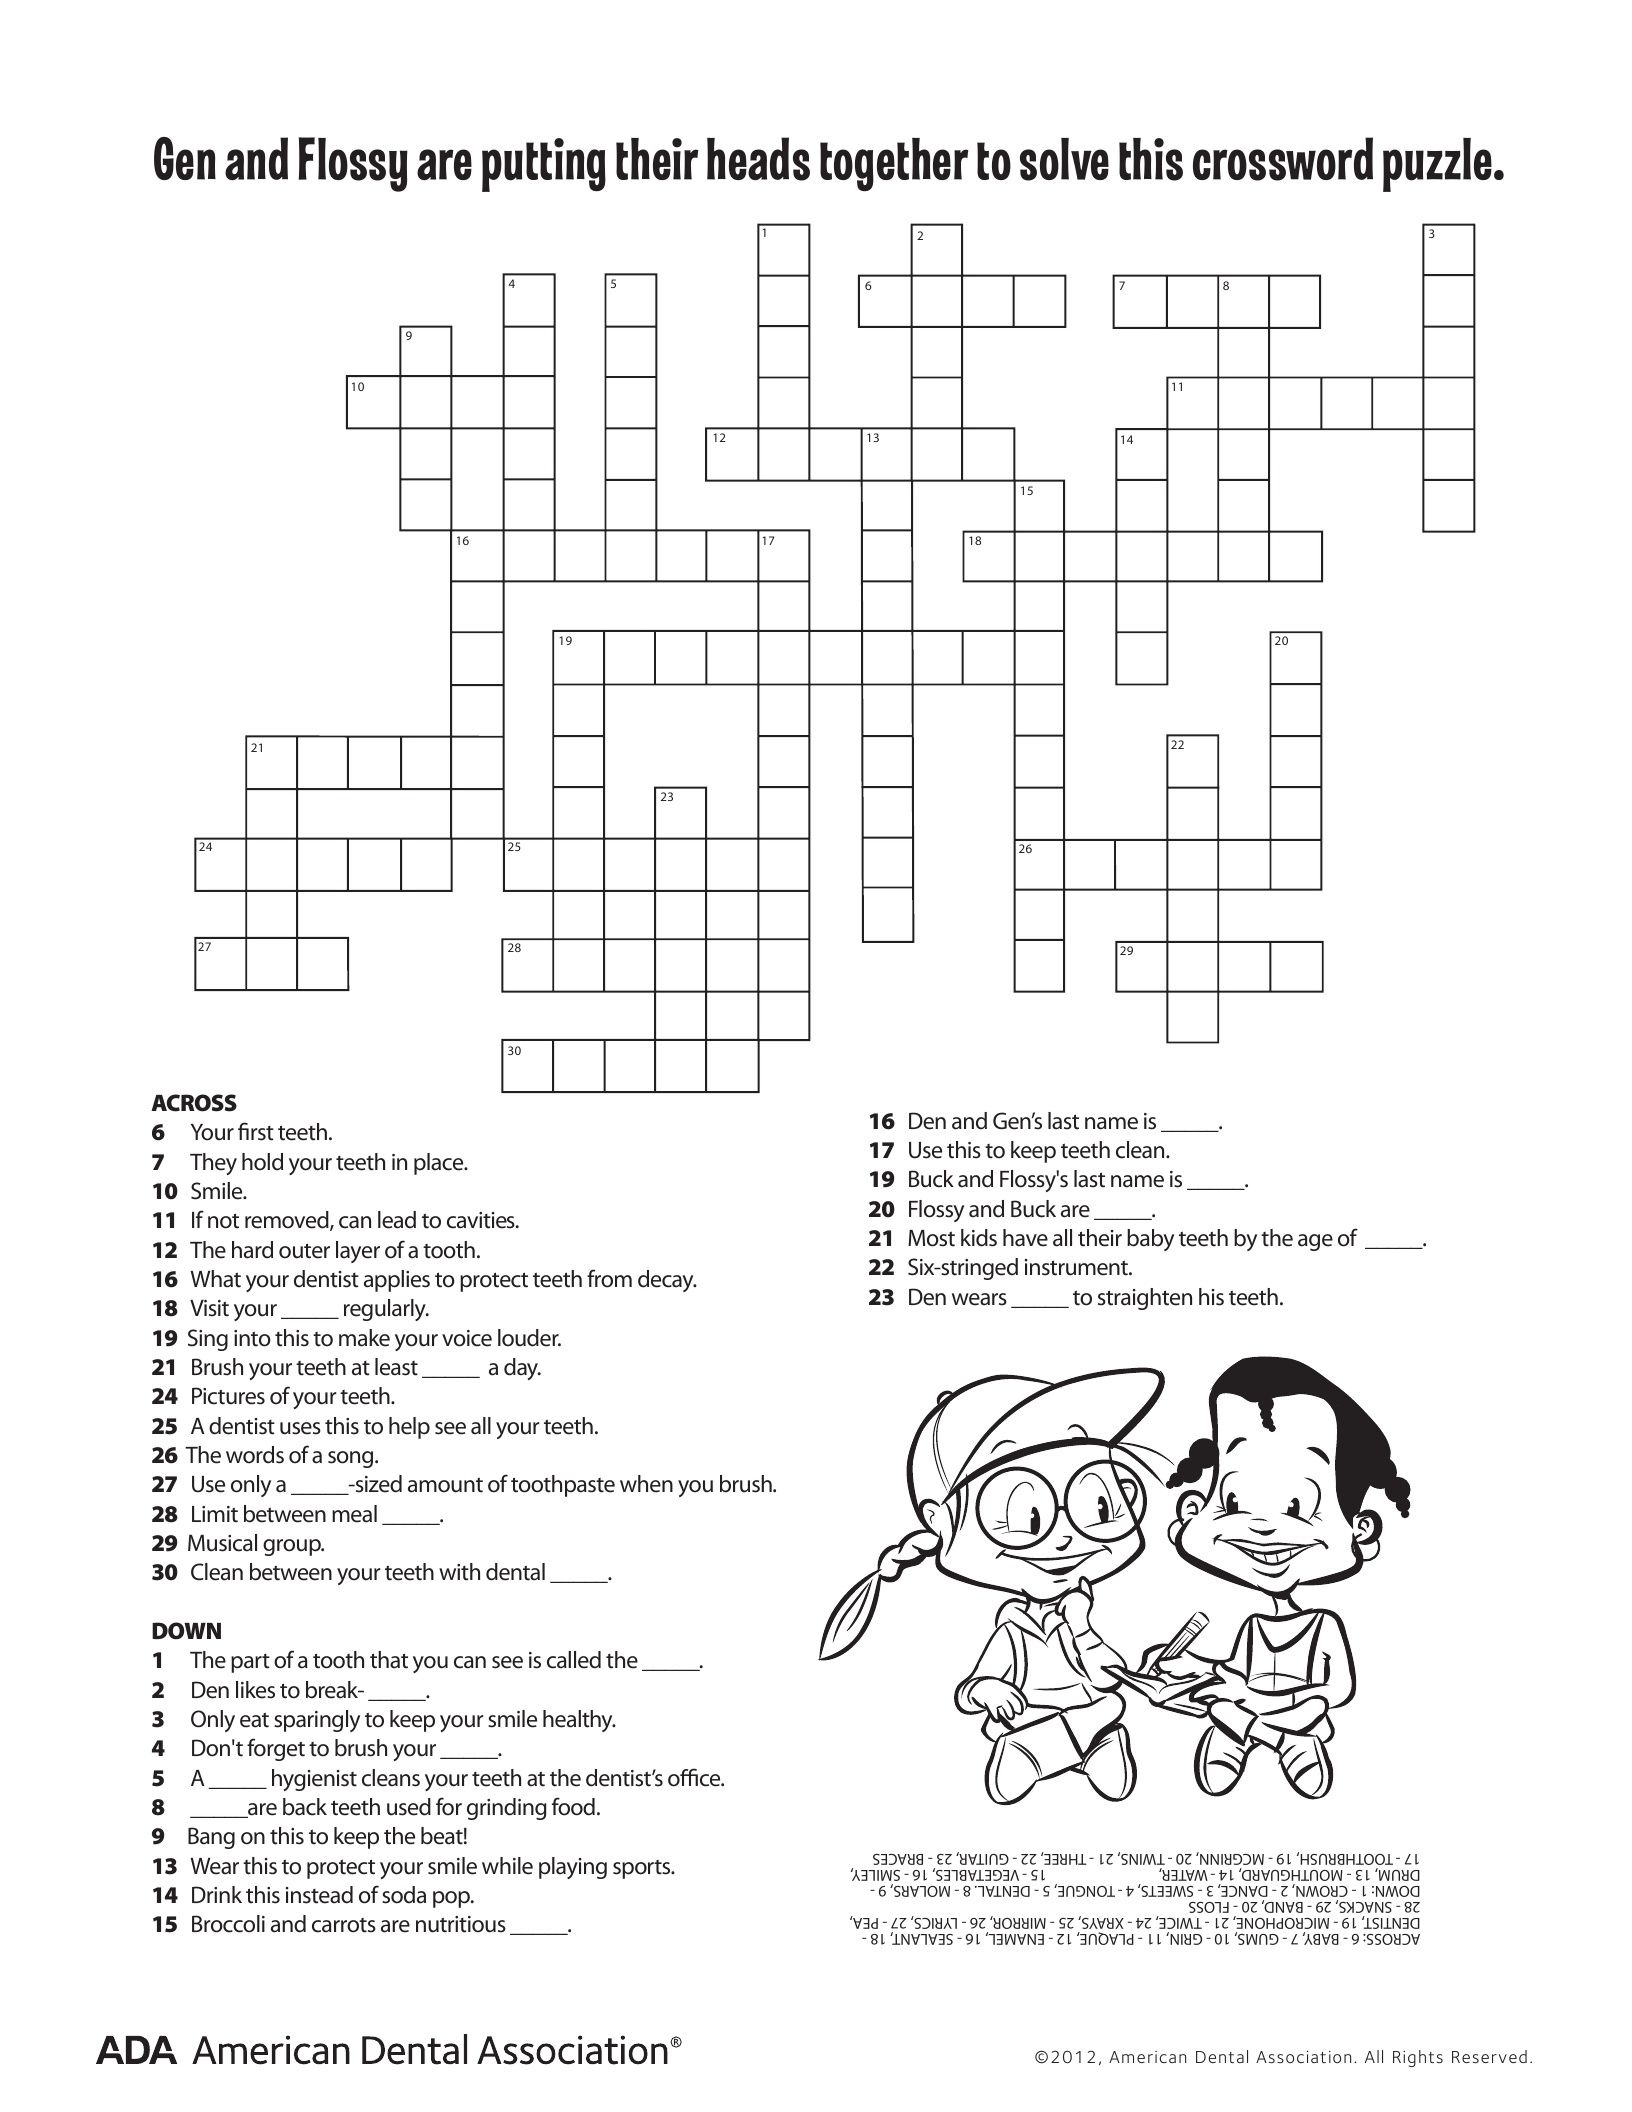 Health Crossword Puzzle Printable